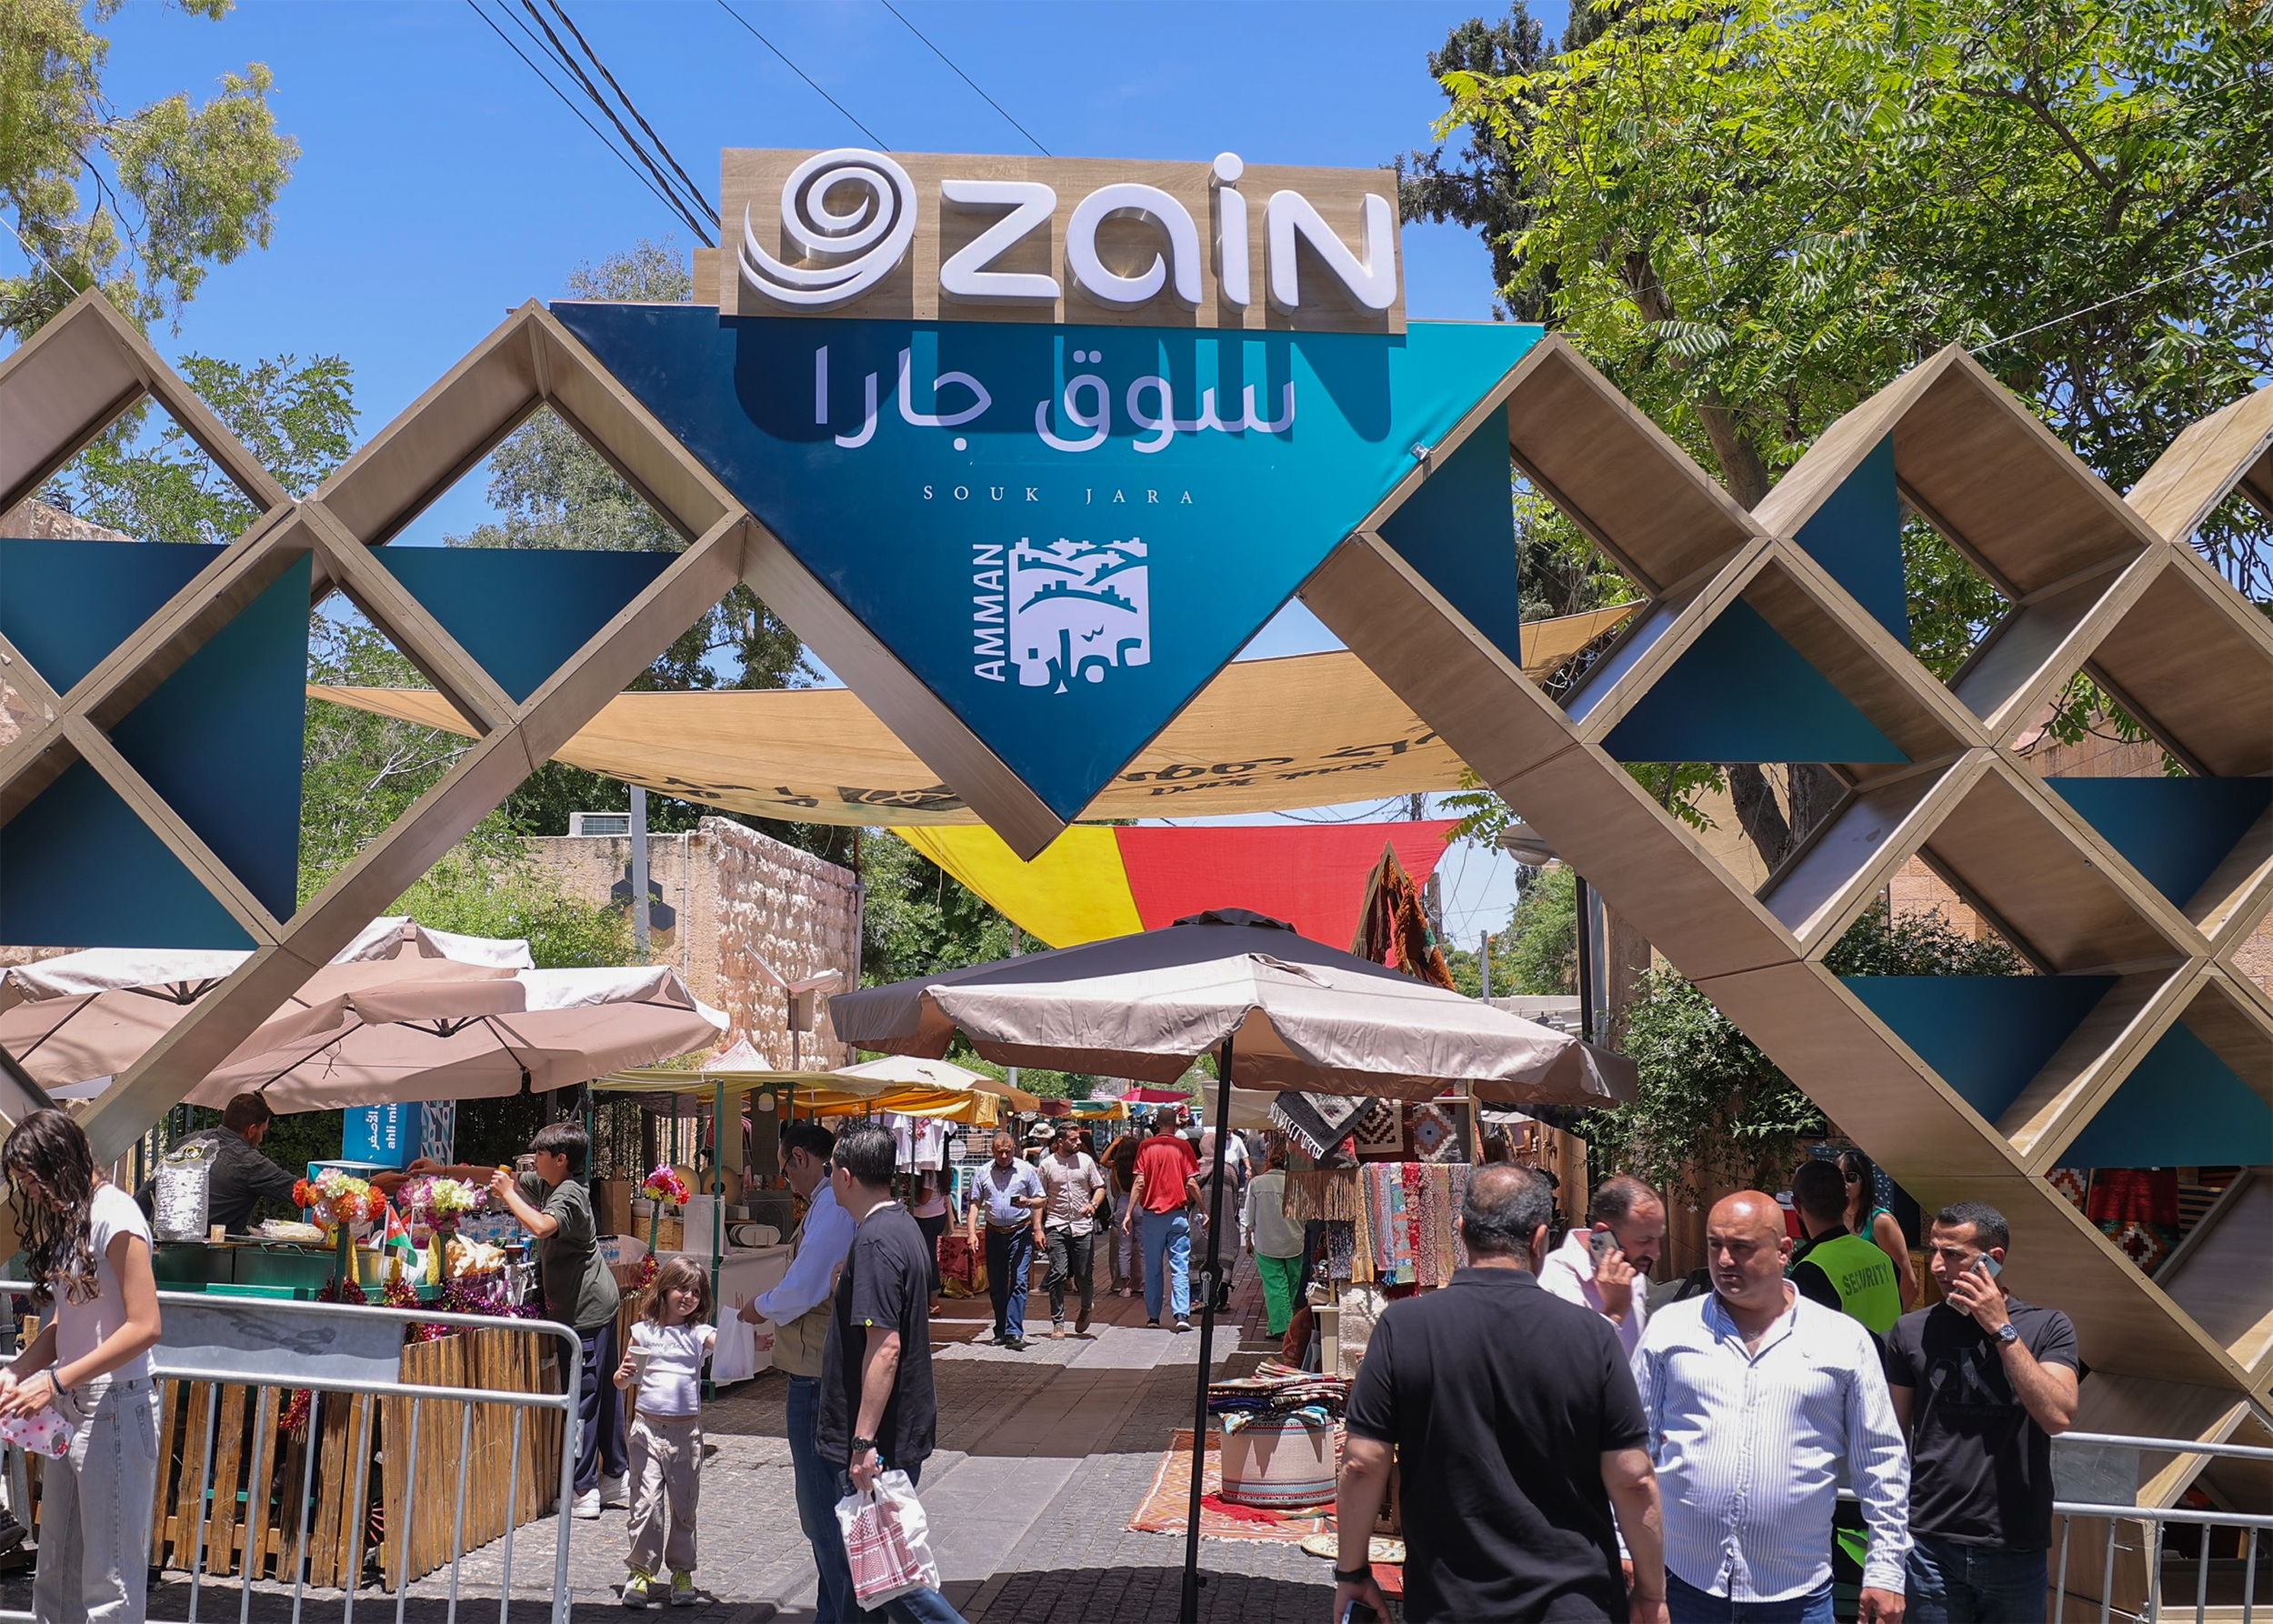 زين تواصل دعمها للسياحة والمجتمع المحلي عبر سوق جارا